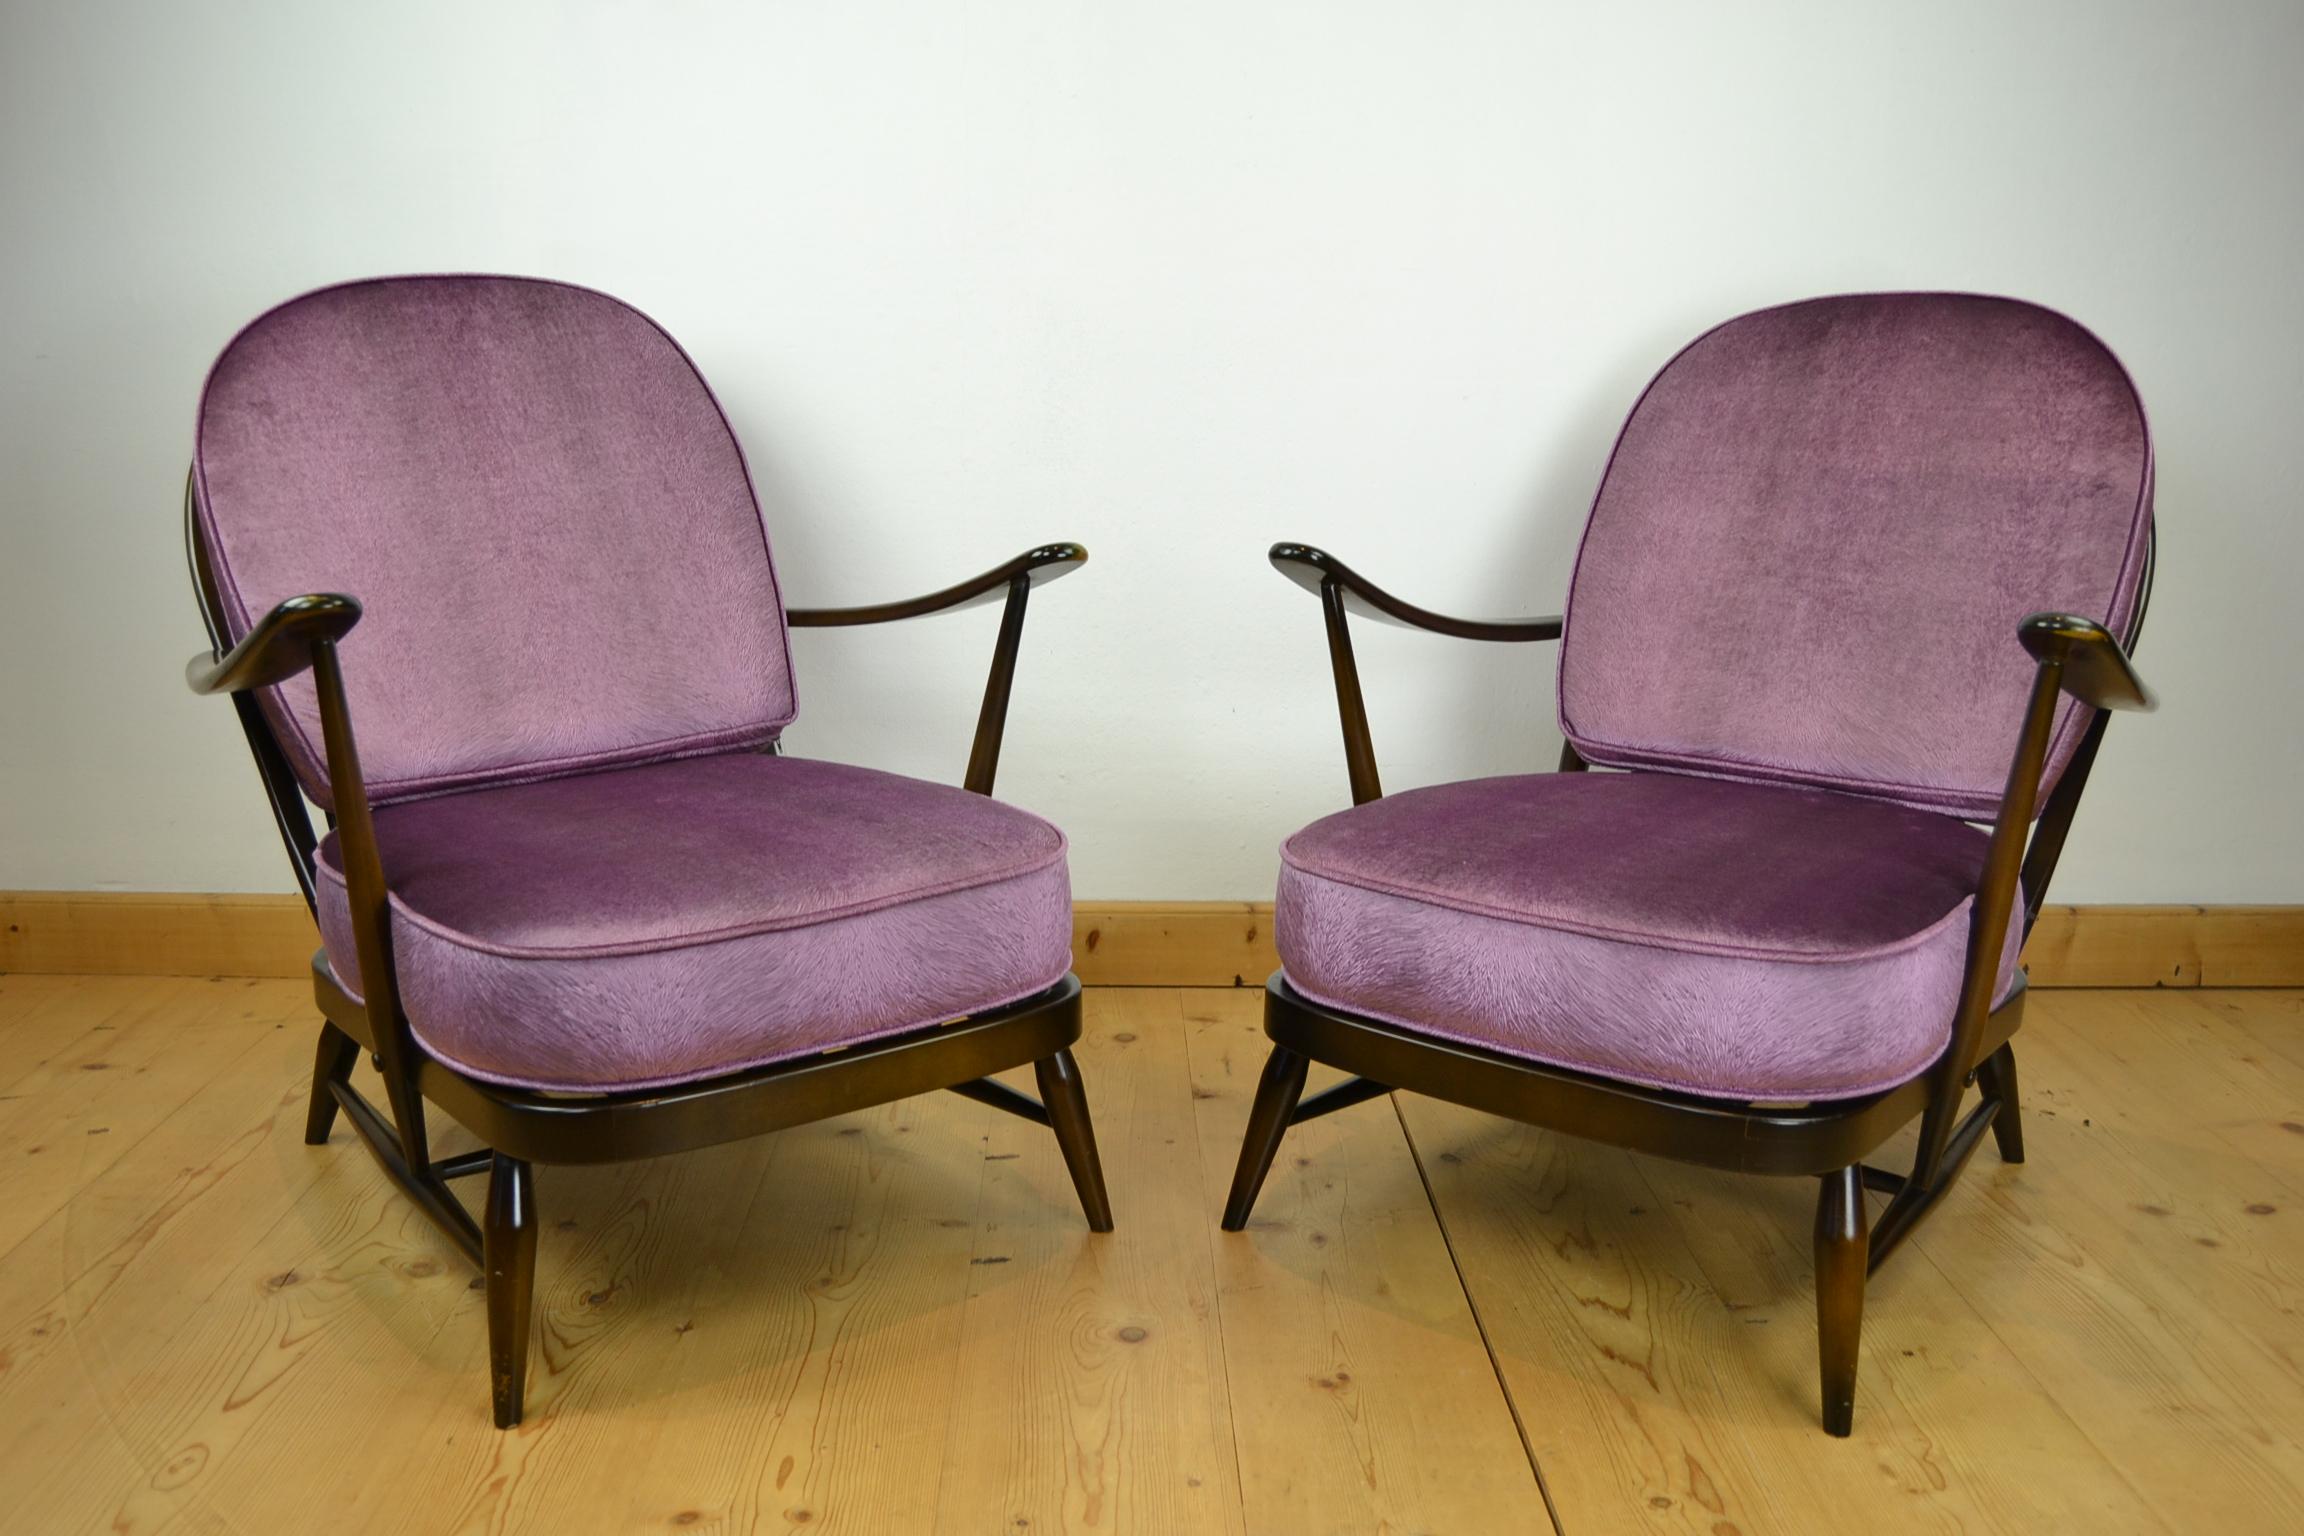 ensemble de 2 fauteuils Ercol Windsor des années 1970.
Ces fauteuils vintage à dossier rond sont fabriqués en orme massif foncé. 
Les deux ont encore leur étiquette sous le siège, et sont datées de 1979. 

Ils ont reçu de nouveaux coussins,